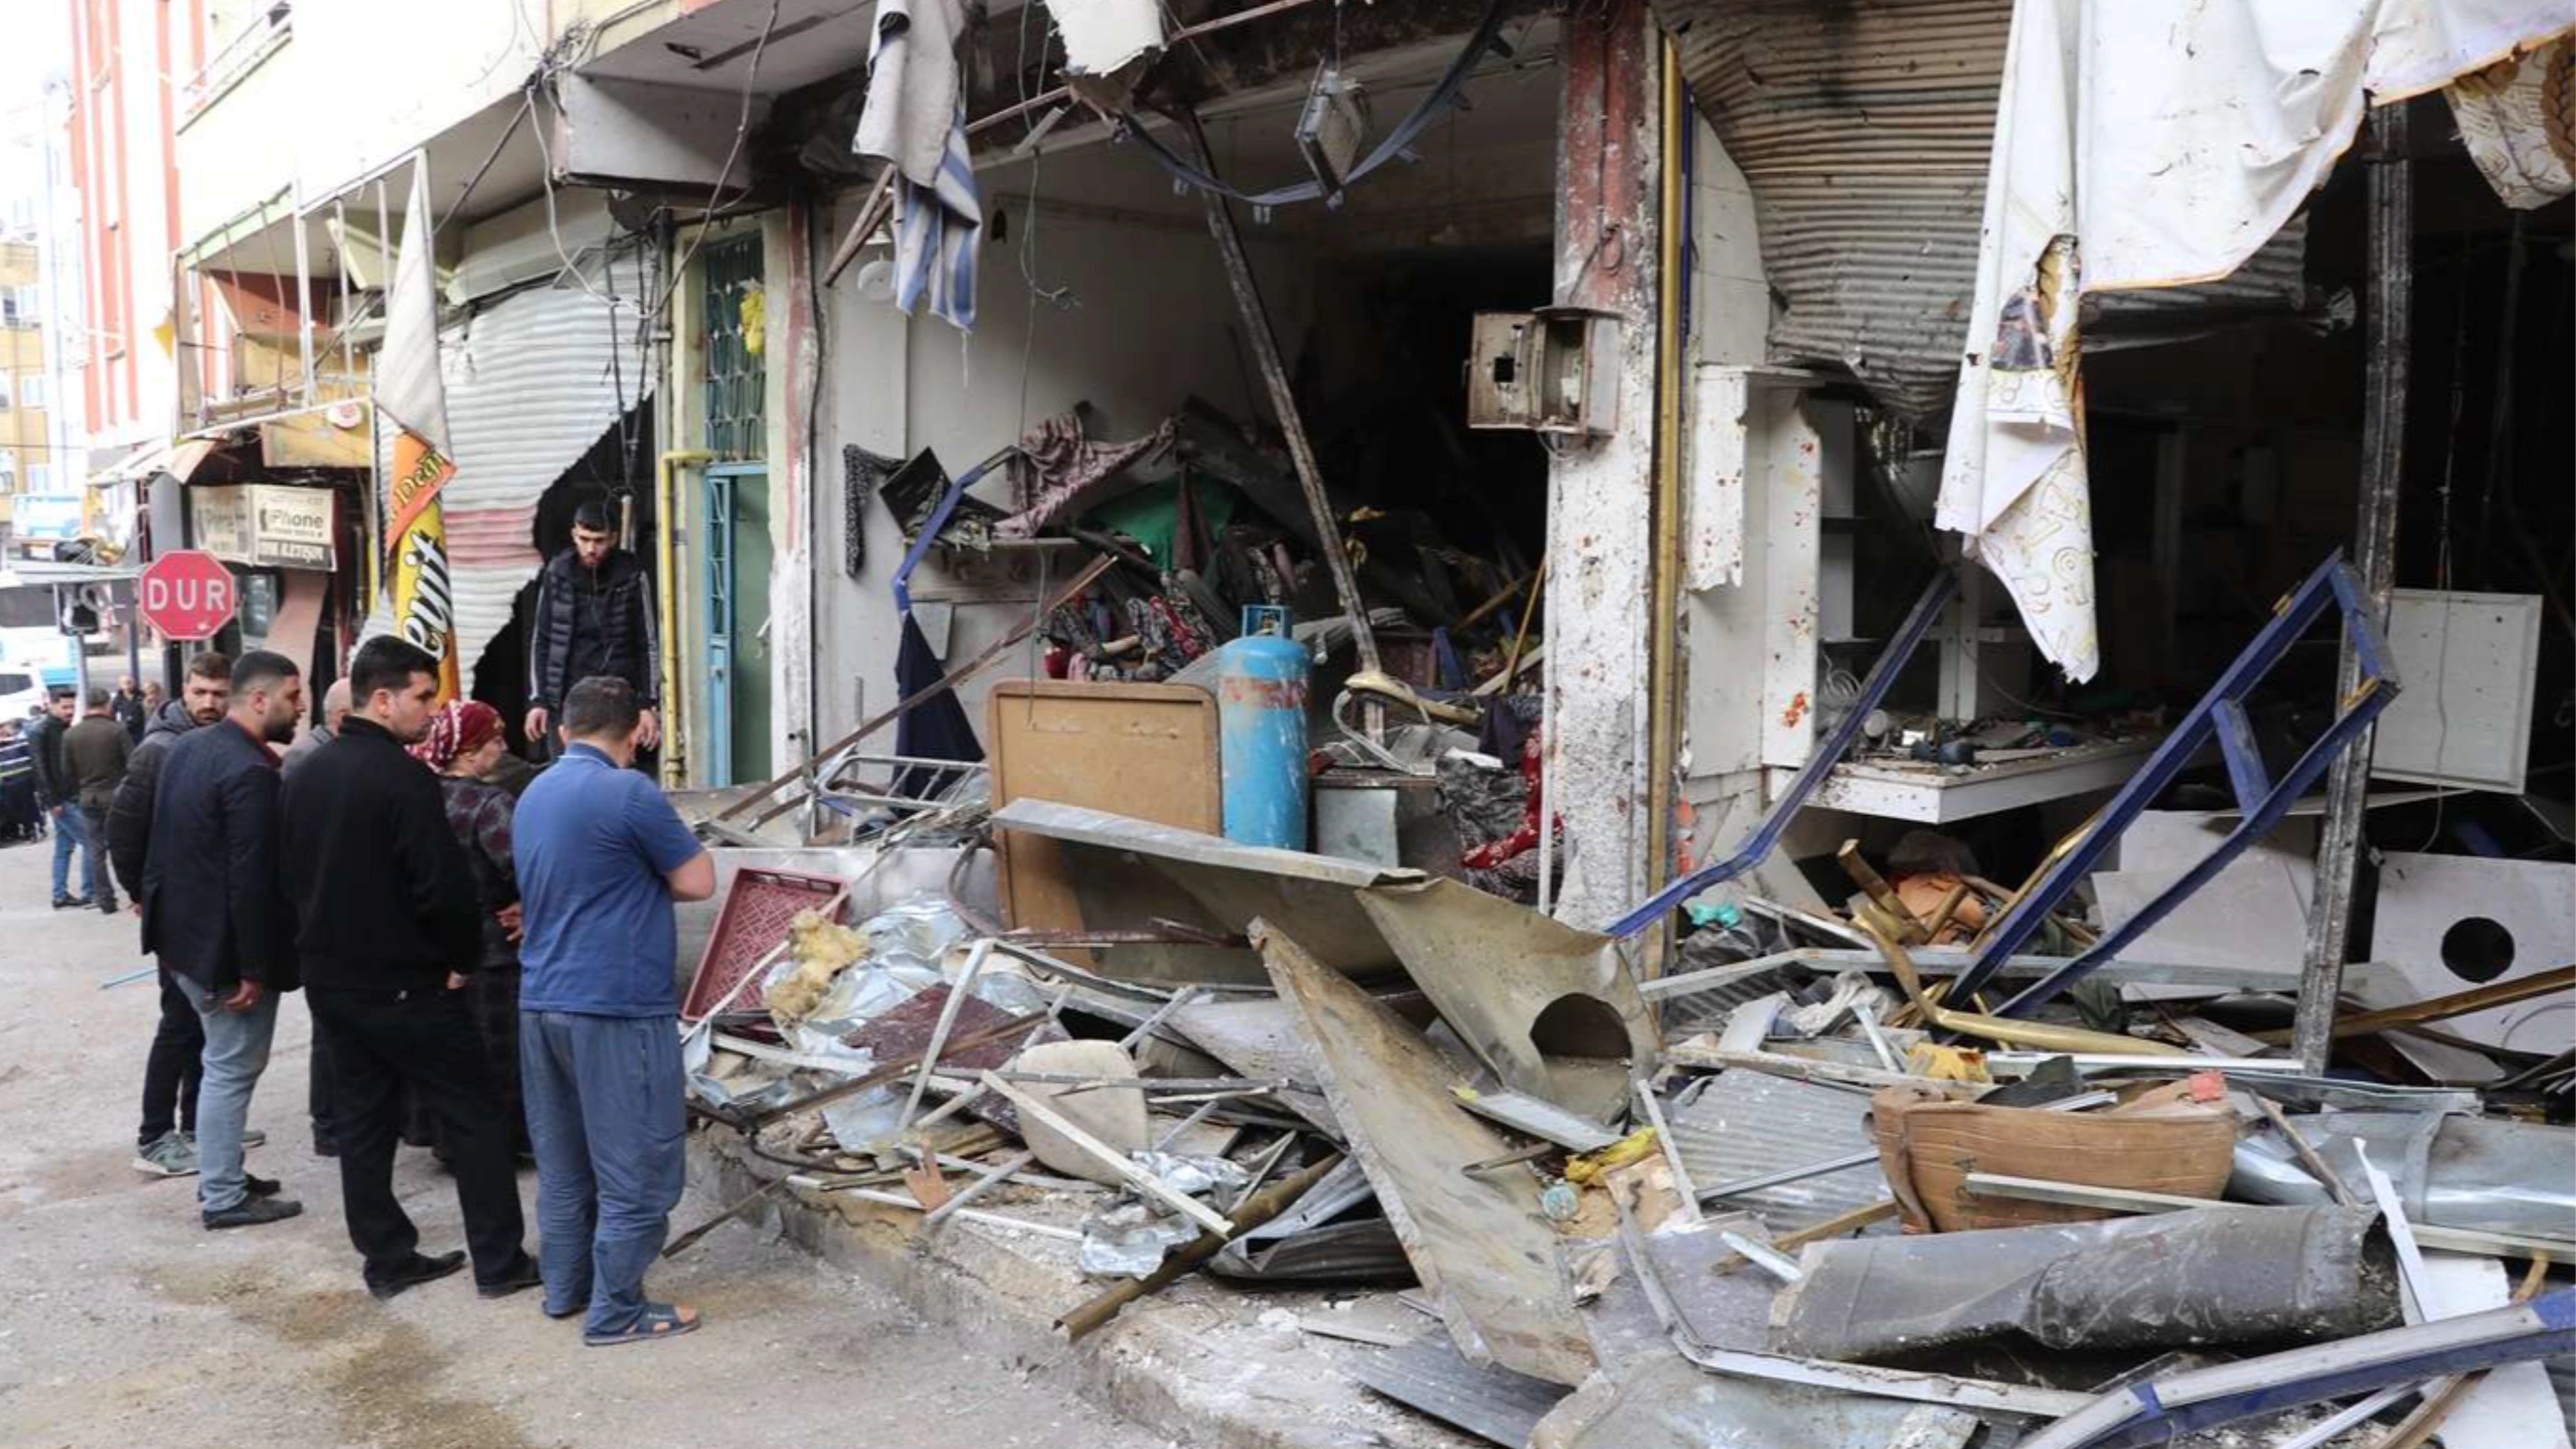 مشهد مرعب.. انفجار أنبوب غاز بمطعم سوري في عنتاب يلحق أضراراً كبيرة بعشرات البيوت والمحال (فيديو)